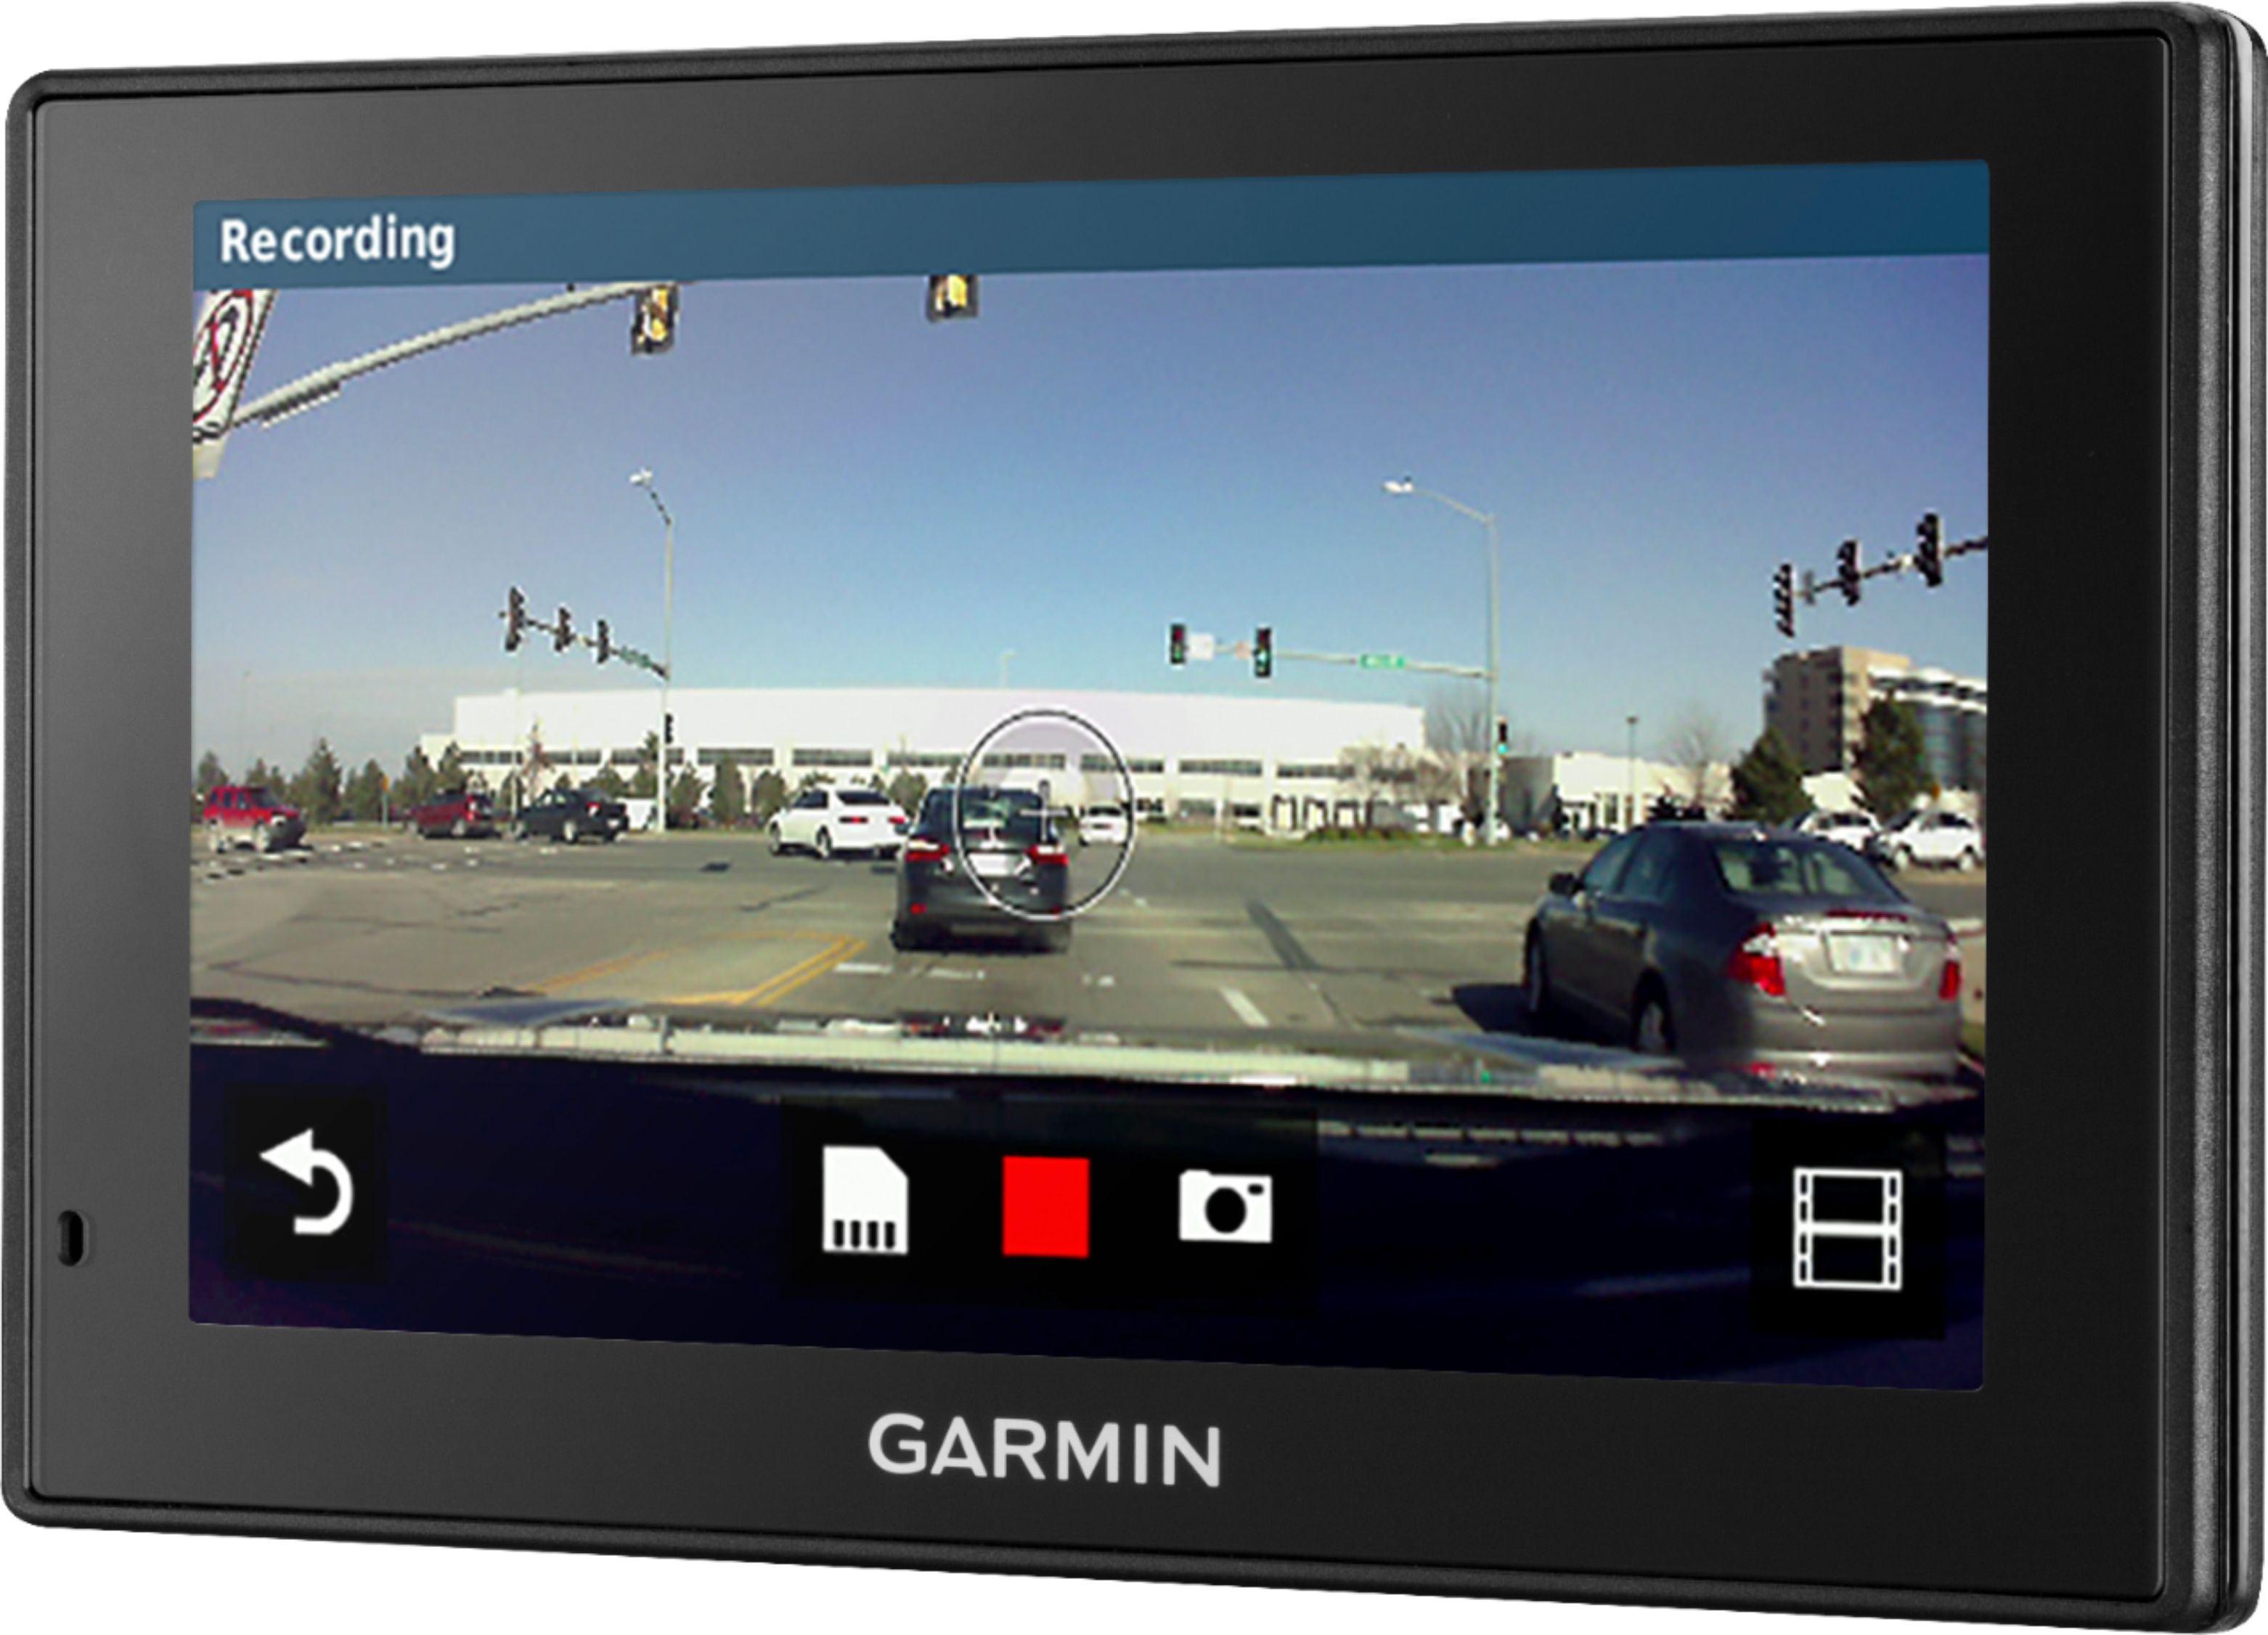 Tutorial – Garmin Dash Cam 46/56/66W/Mini: How To Pair With Garmin Drive  App 